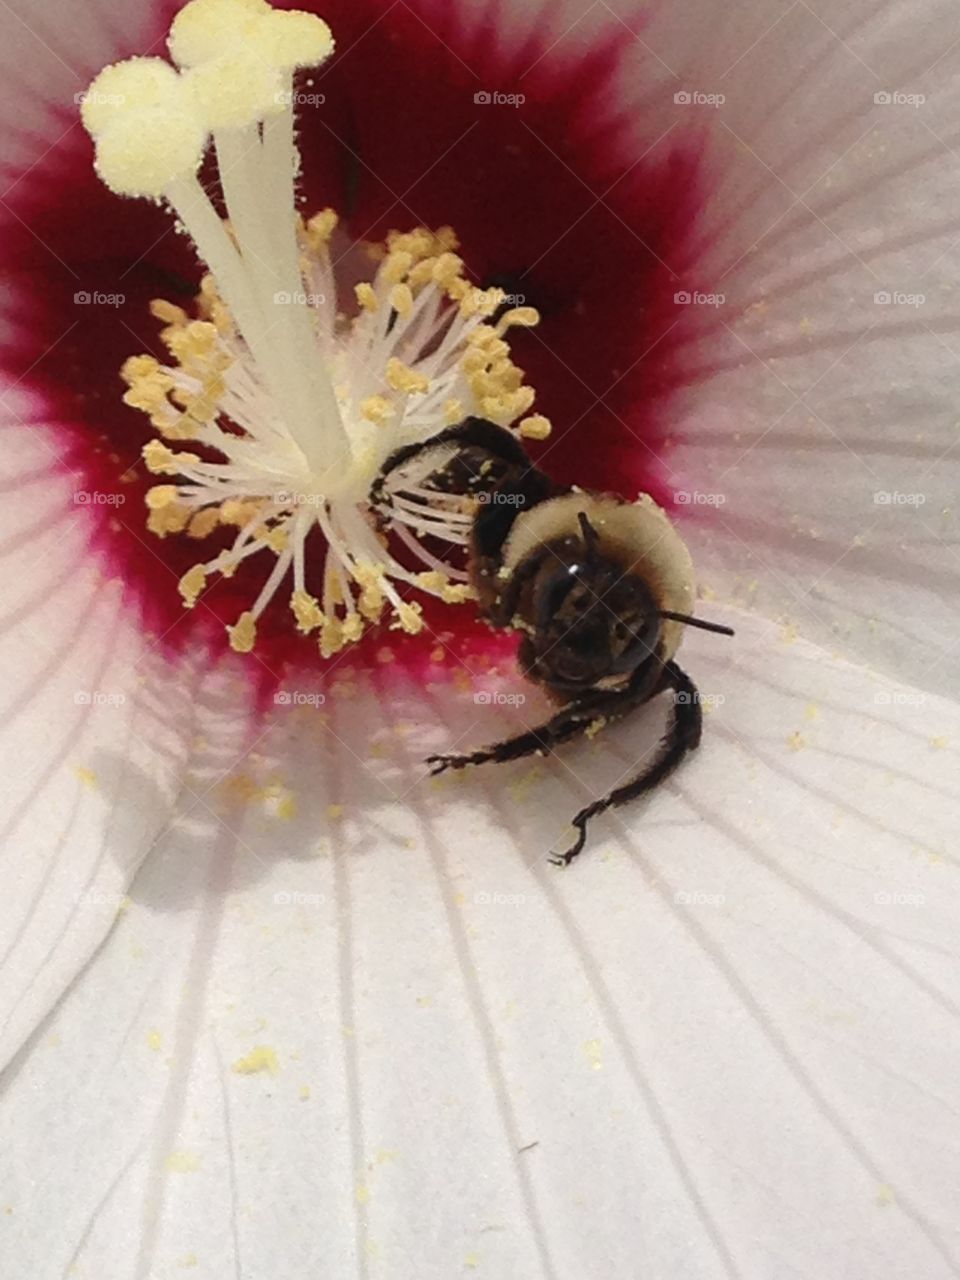 Honey bee in hibiscus. Honey bee goes to town with pollen!
